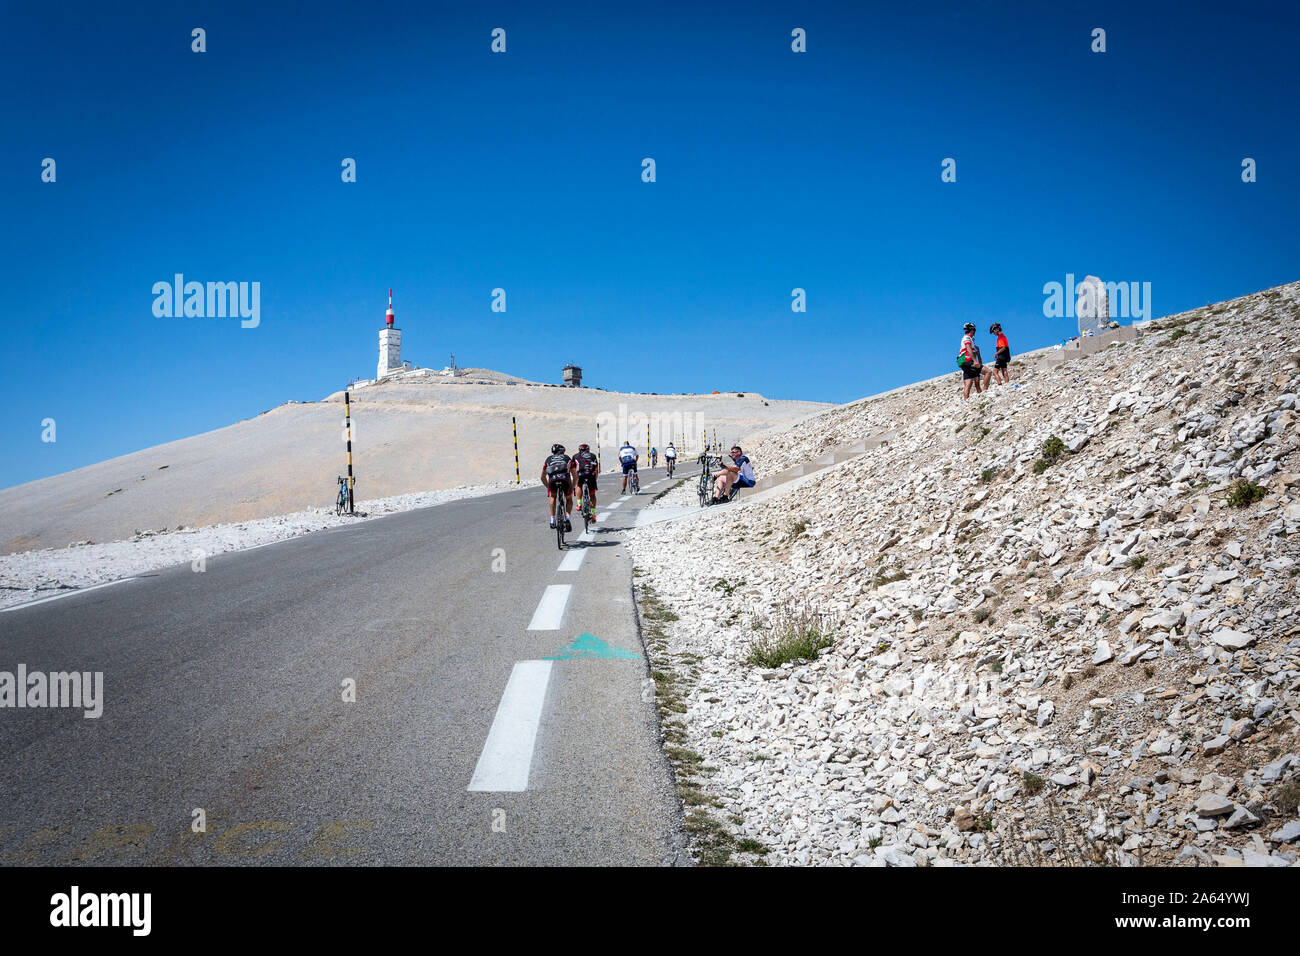 El 'Mont montaña Ventoux" (sureste de Francia): Los ciclistas subiendo a la montaña, pasando por la estela en memoria del ciclista Tom Simpson Foto de stock